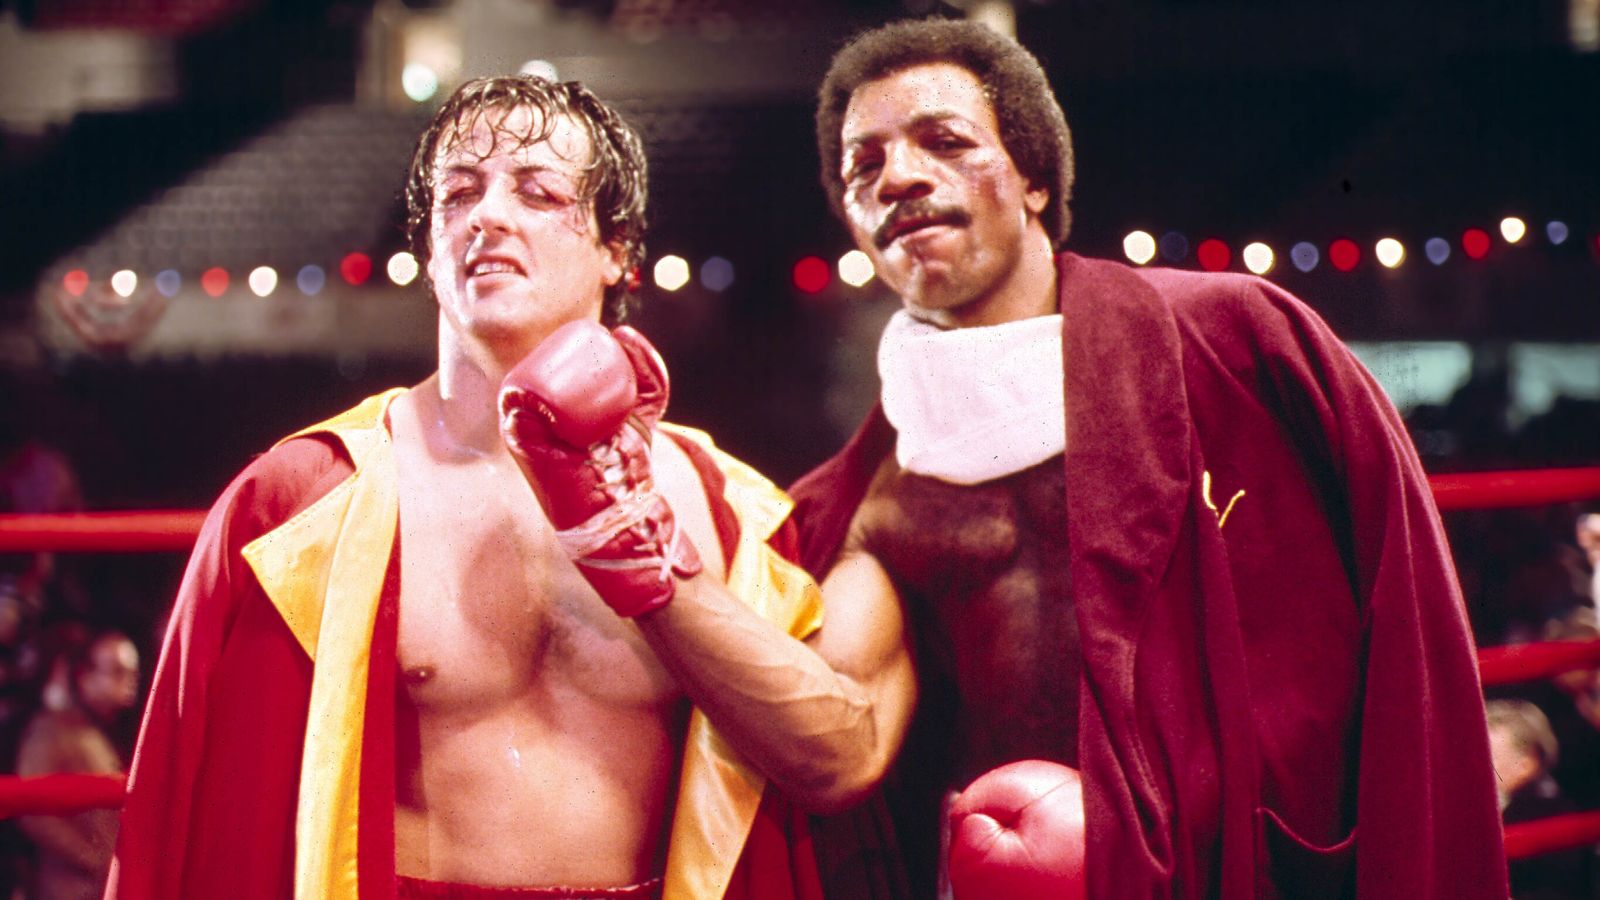 Rocky, Carl Weathers ottenne il ruolo di Apollo criticando la recitazione di Sylvester Stallone